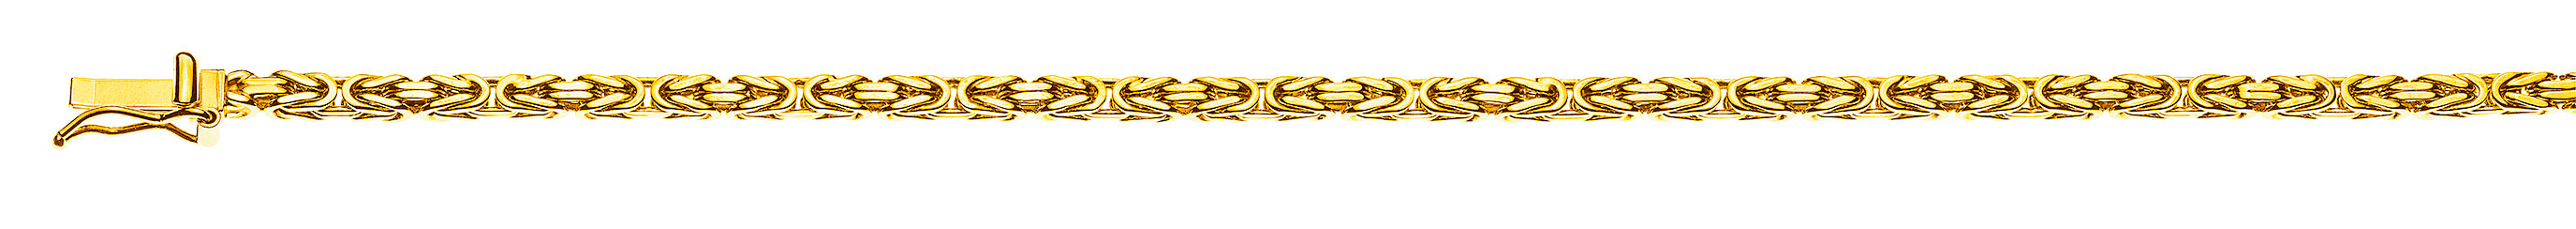 AURONOS Prestige Collier en or jaune 18K chaîne royale 55cm 2.5mm